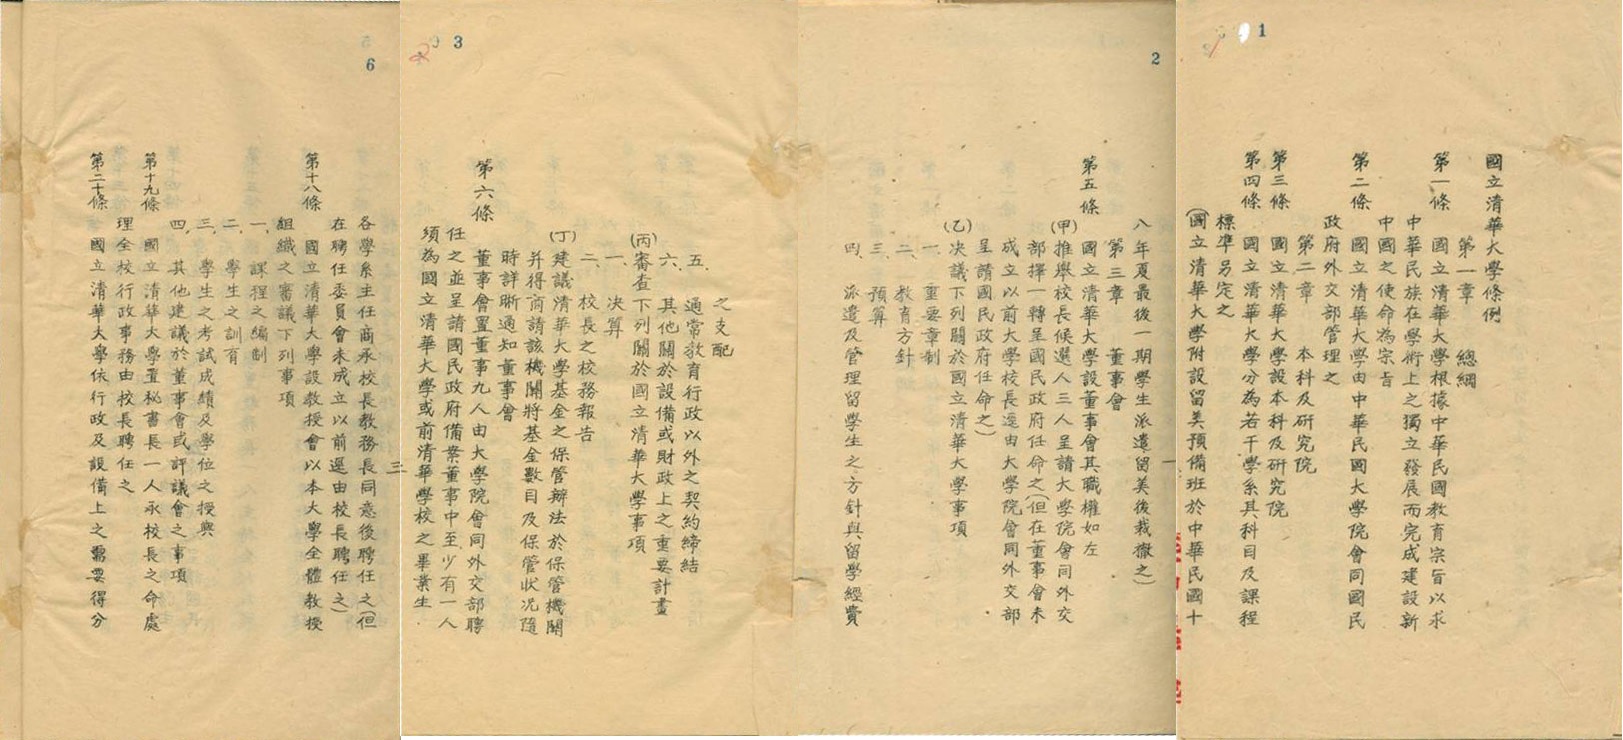 国立清华大学条例，1928年9月。清华大学校史馆藏